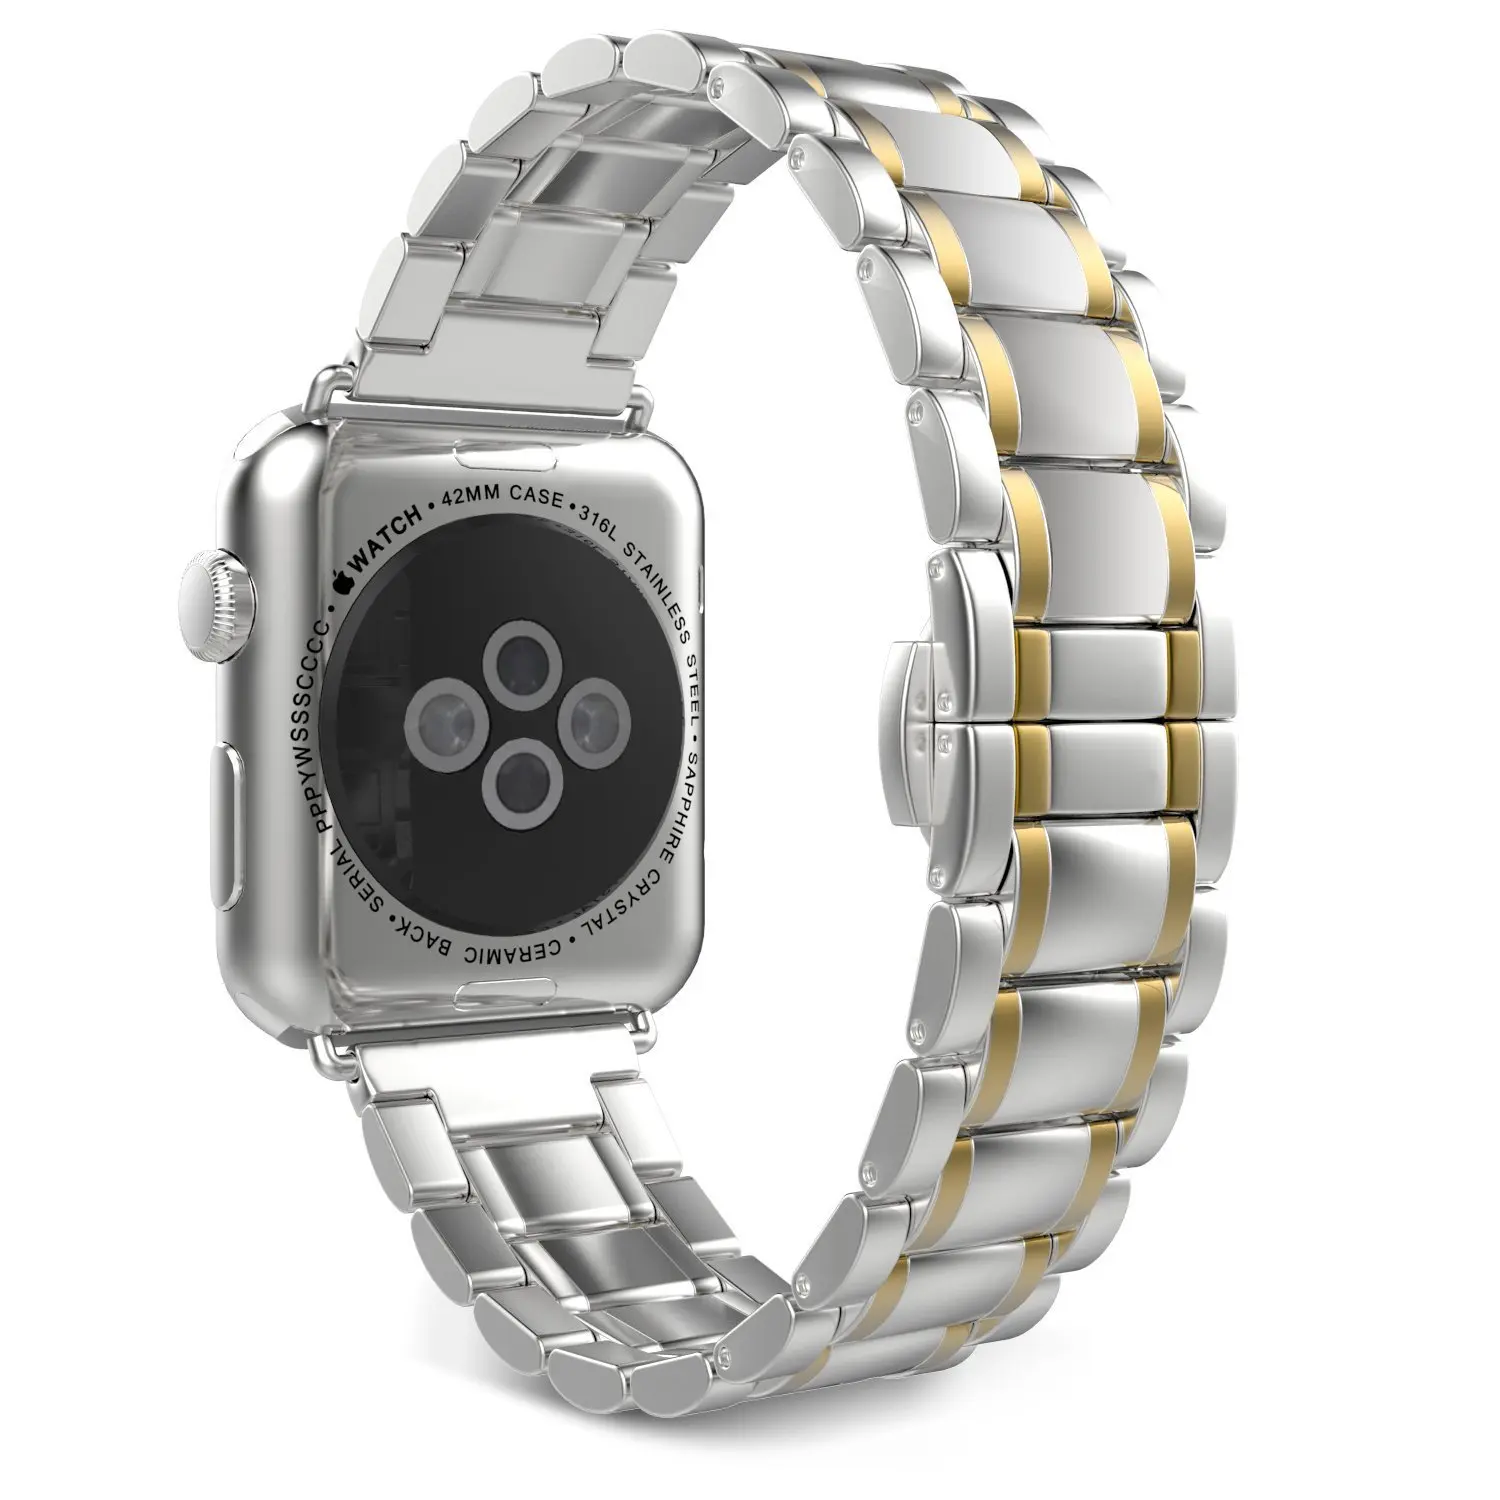 Роскошный браслет с застежкой "Бабочка" для Apple Watch 38 мм 42 мм ремешок из нержавеющей стали золотой ремешок для iwatch Band Series1 2 3 ремешки для часов